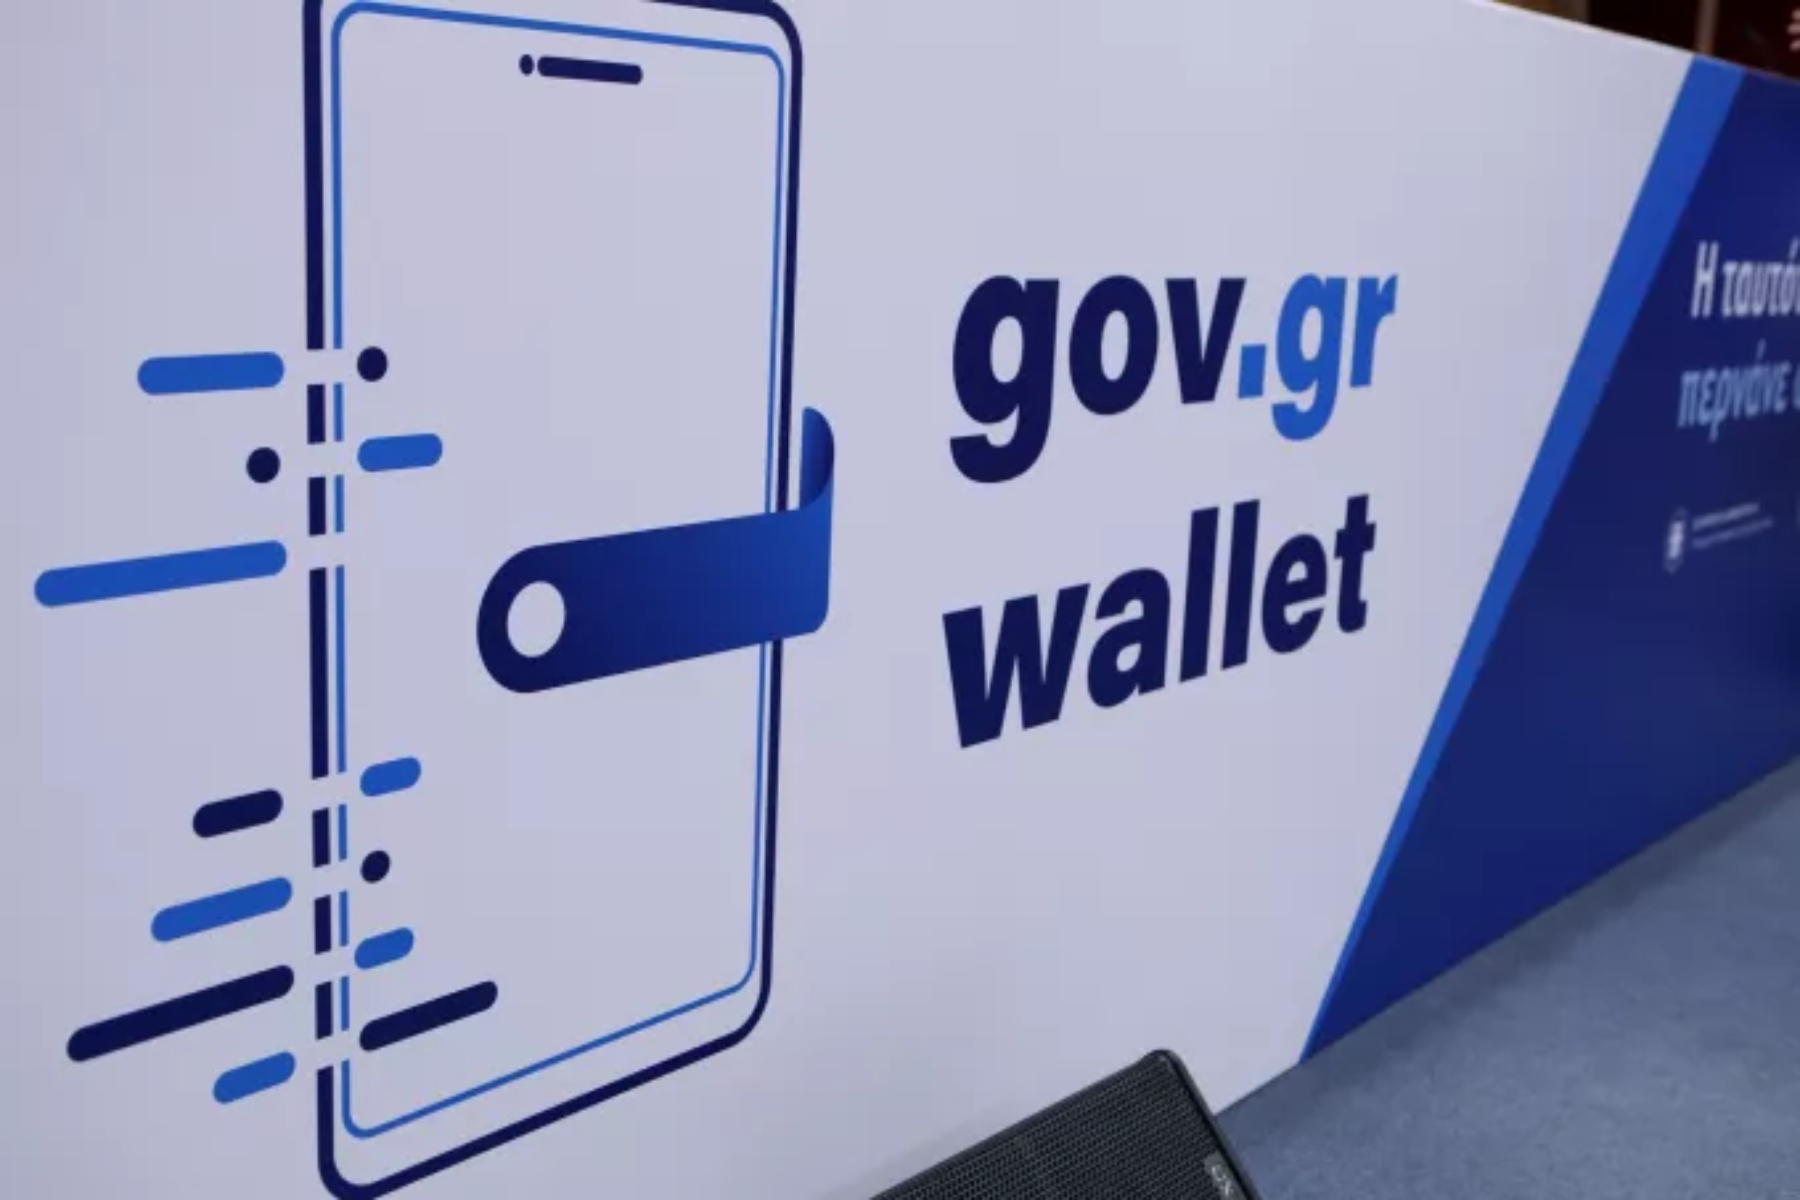 ΔΥΠΑ: Η ψηφιακή κάρτα θα αποθηκεύεται στο Gov.gr Wallet